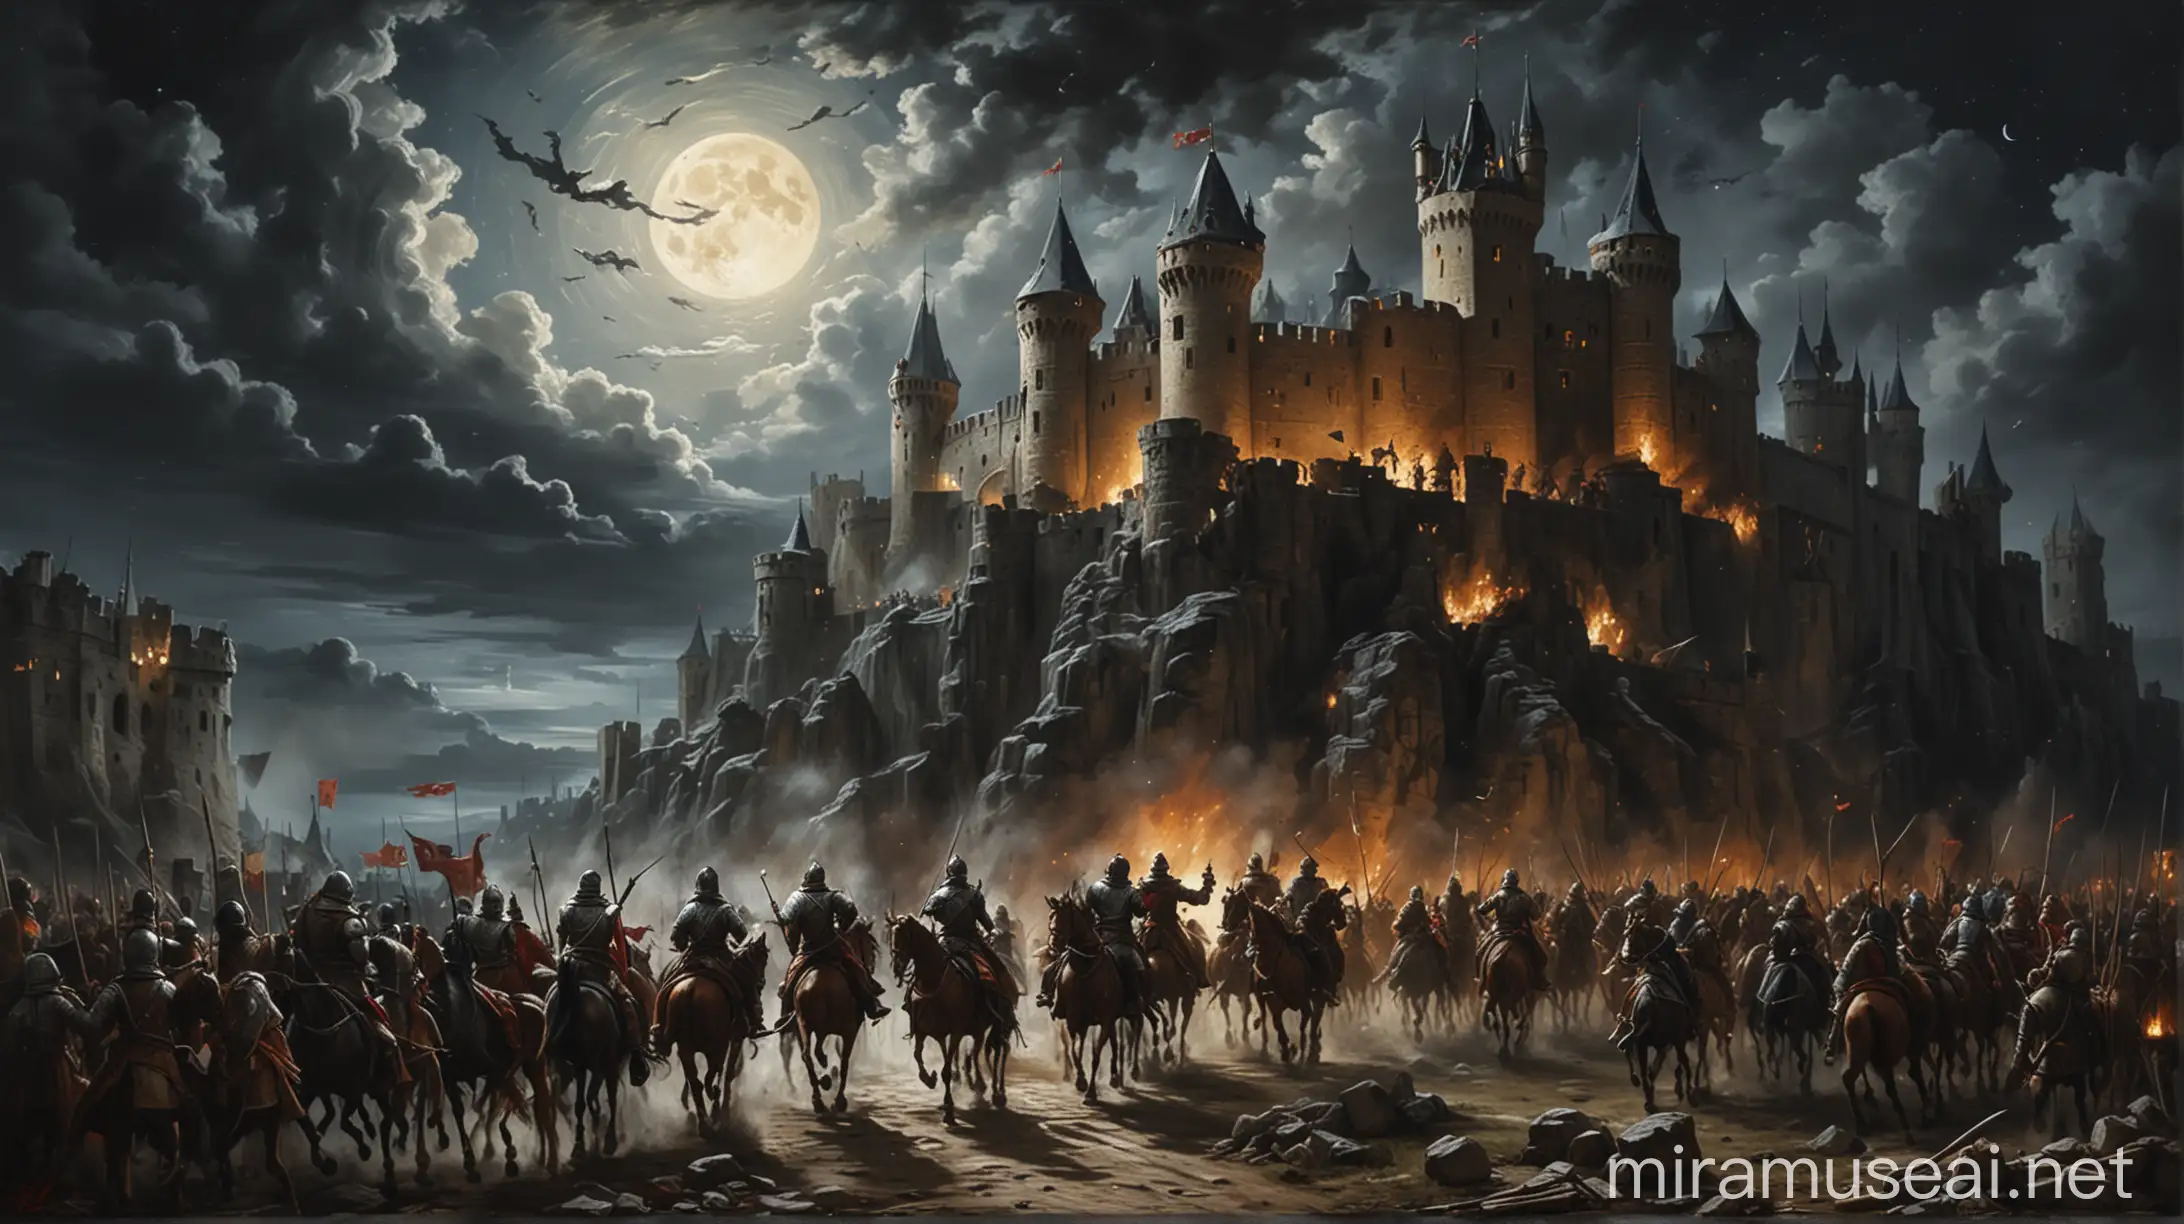 Medieval Battle Scene Renaissance Oil Painting of Moonlit Castle Conflict